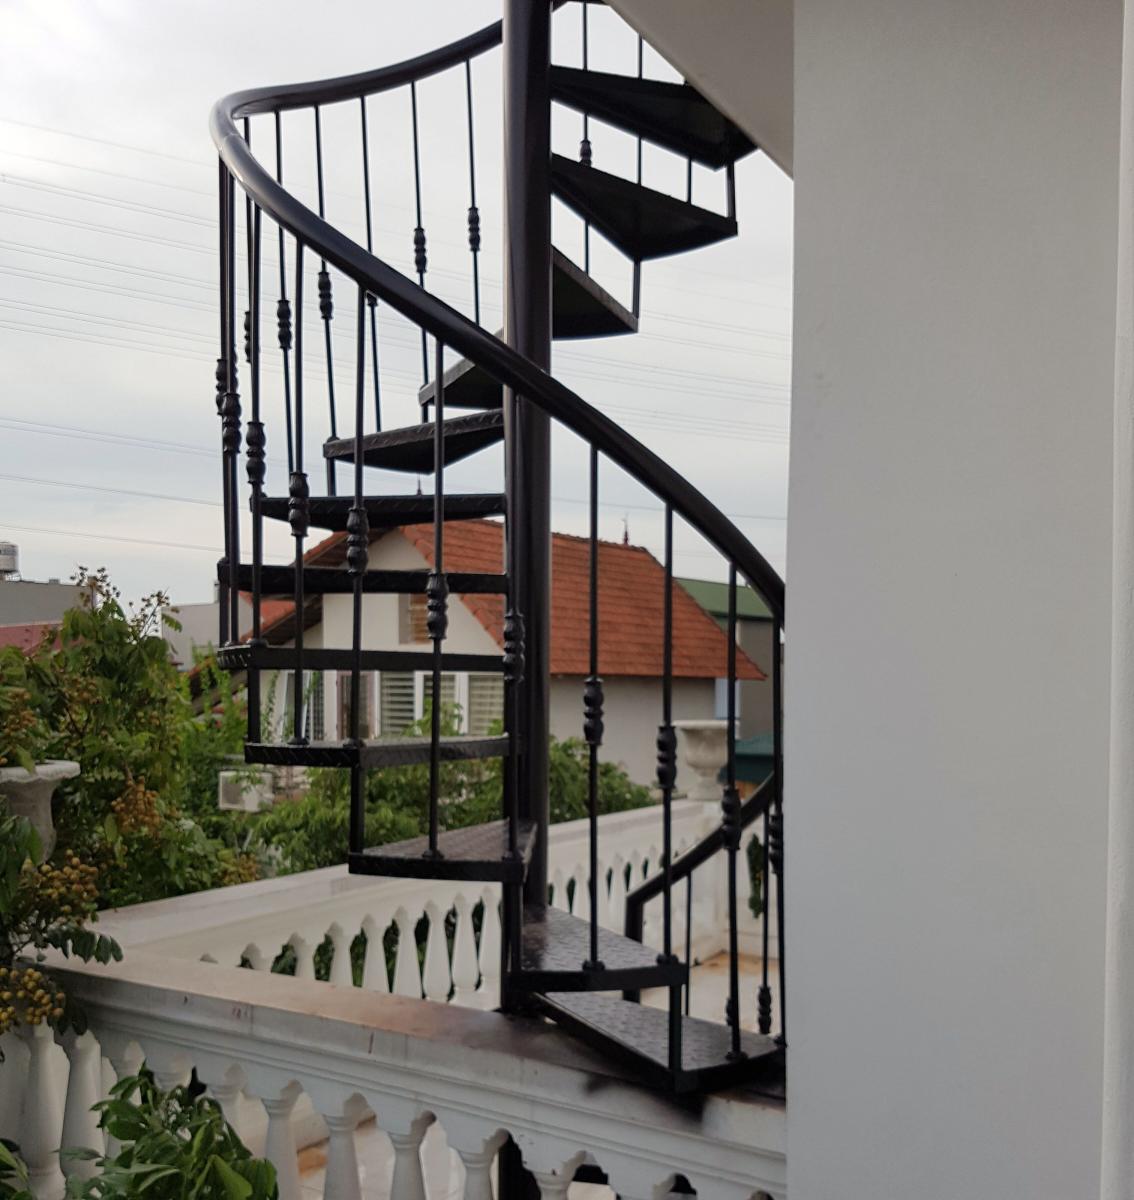 Thiết kế cầu thang: Cầu thang không chỉ là một bộ phận cần thiết trong kiến trúc nhà ở, mà còn là vật dụng trang trí độc đáo cho ngôi nhà của bạn. Với các thiết kế đẹp và sáng tạo, chúng tôi sẽ giúp bạn tạo ra một cầu thang độc đáo và tuyệt vời cho ngôi nhà của bạn.